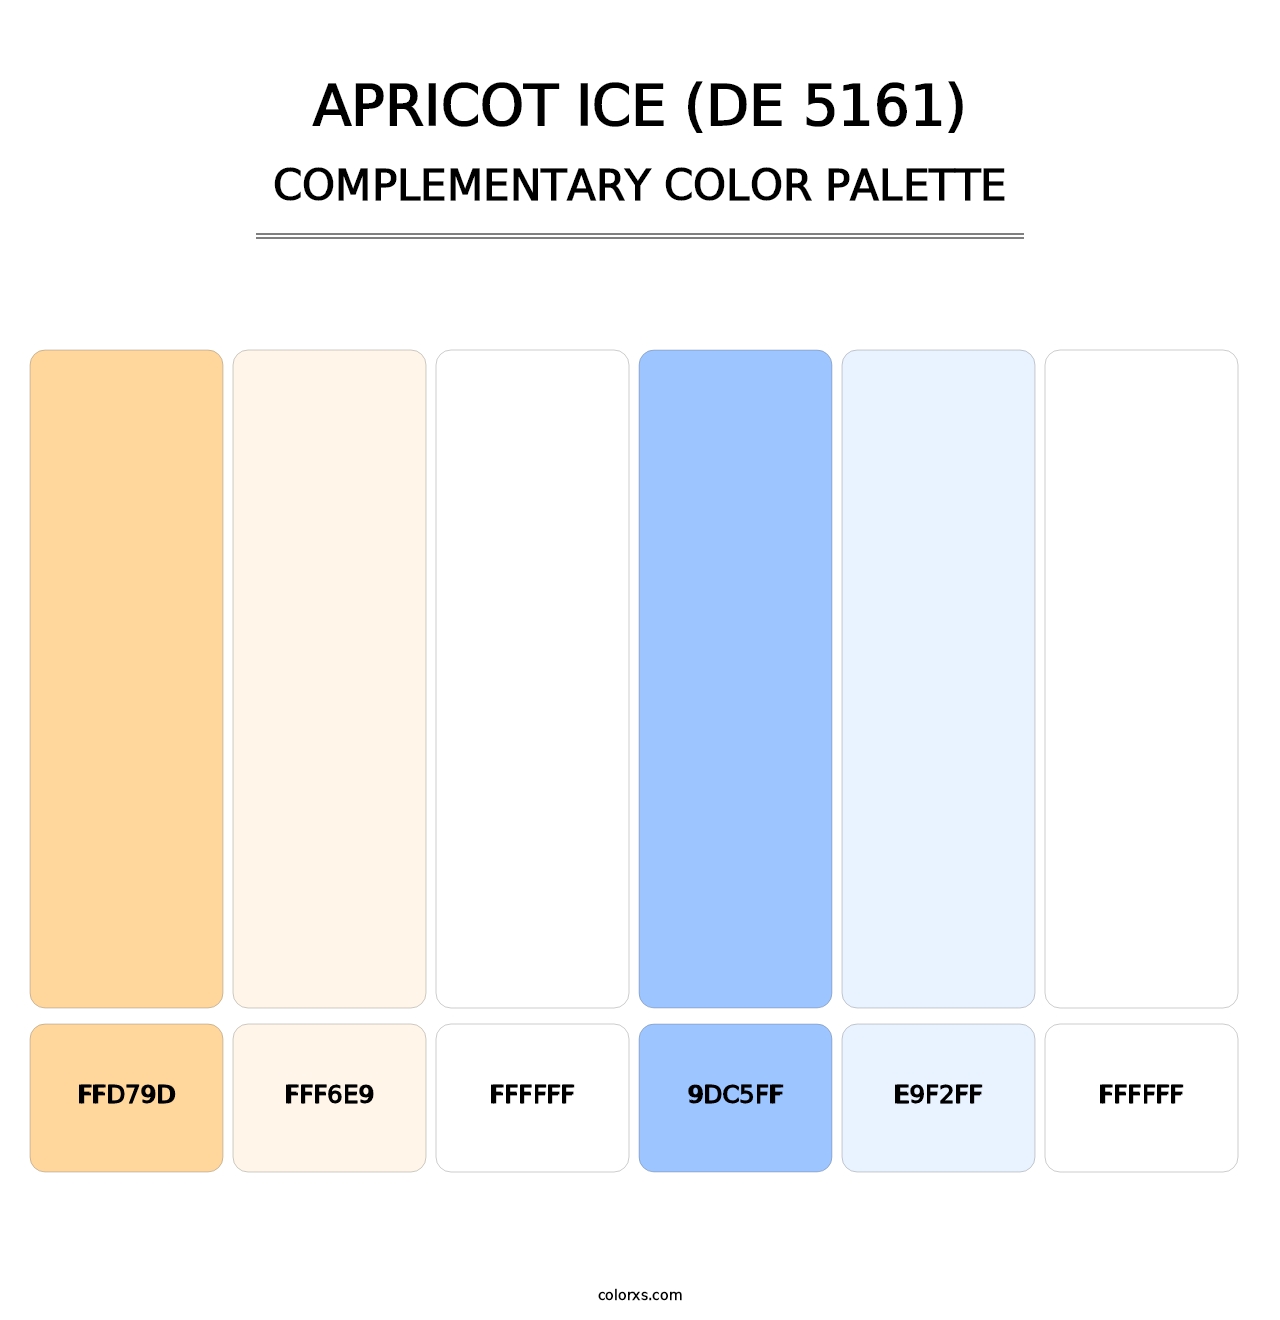 Apricot Ice (DE 5161) - Complementary Color Palette